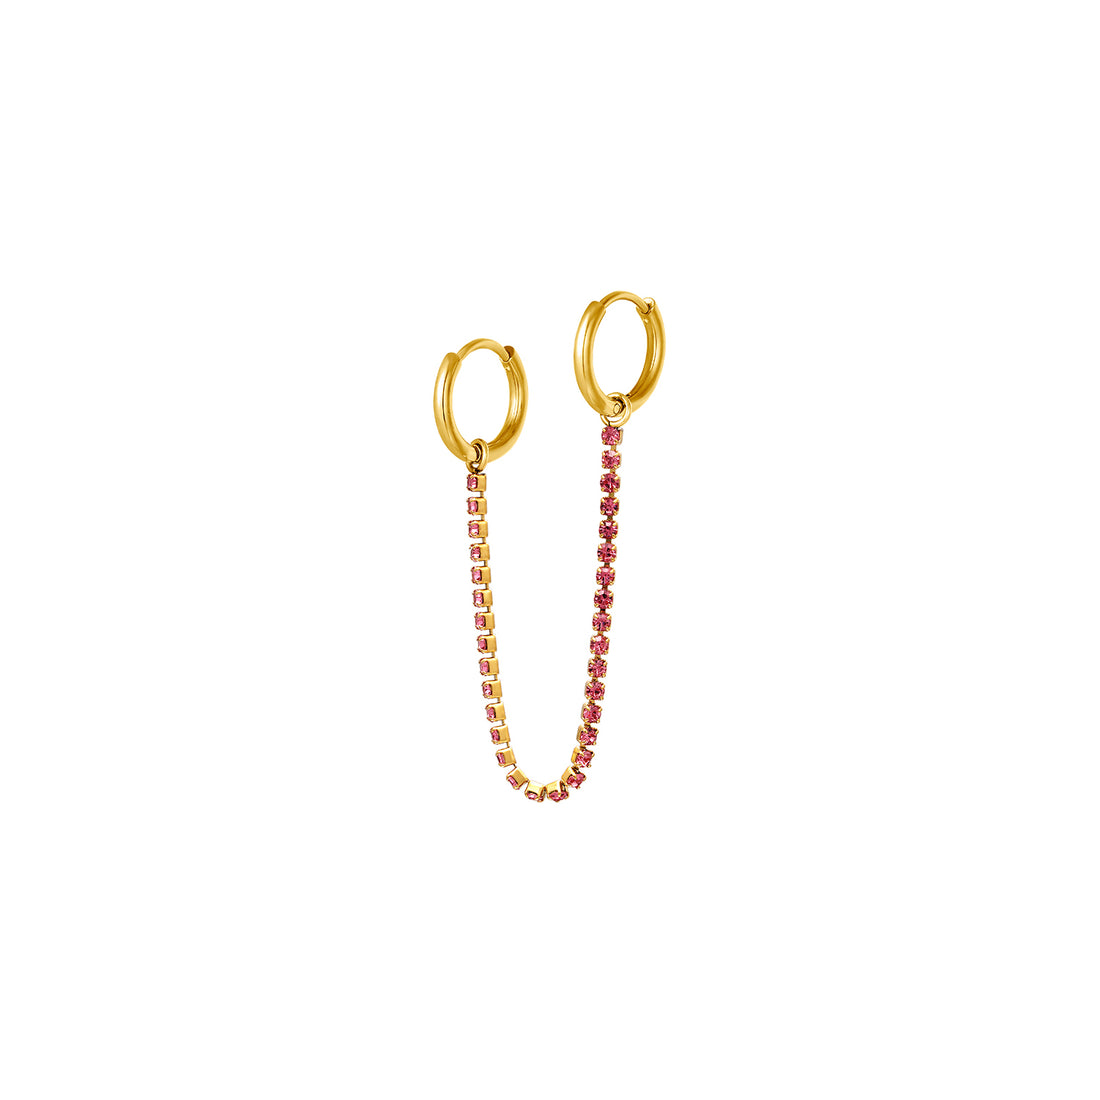 Gouden oorbel met chain met roze zirconia steentjes er aan. De oorbel wordt per stuk verkocht en het materiaal van de oorbellen is roestvrij staal met een gold plated laagje. De oorbel verkleurt niet en is waterproof. Afmetingen: 9.1 cm